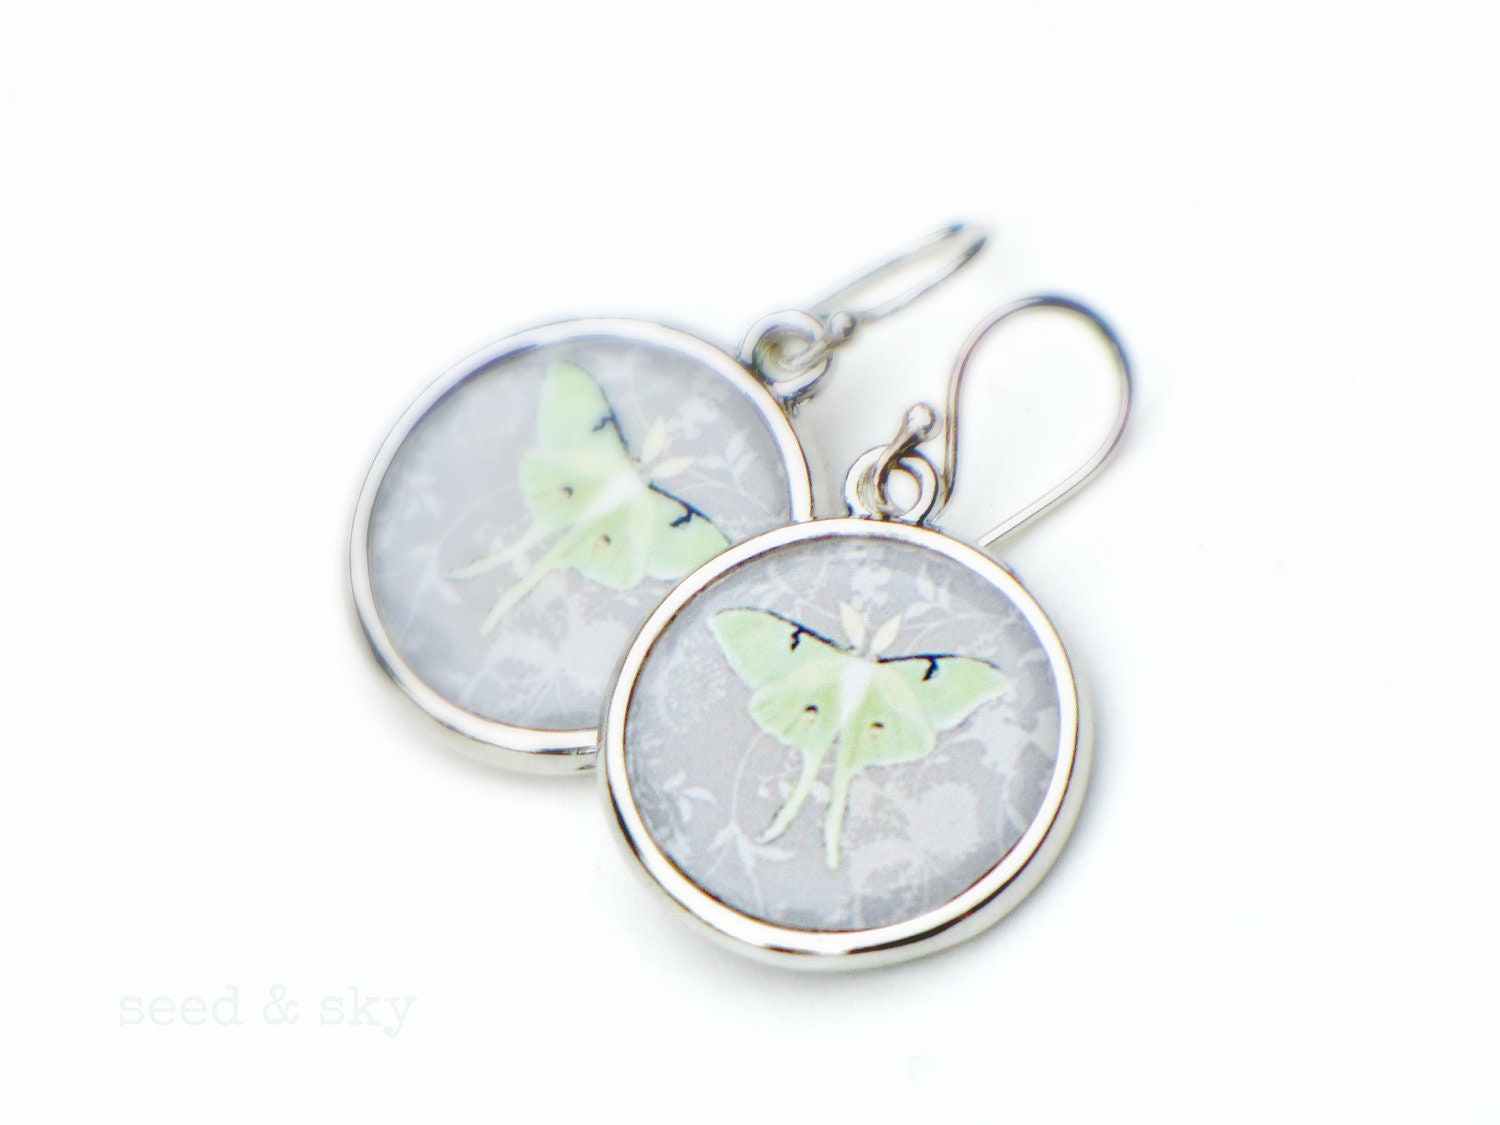 LUNA MOTH EARRINGS -  Double Sided Mint Green Gray Grey Jewelry - Butterfly Moth Earrings - elegant gray jewelry - SeedandSky